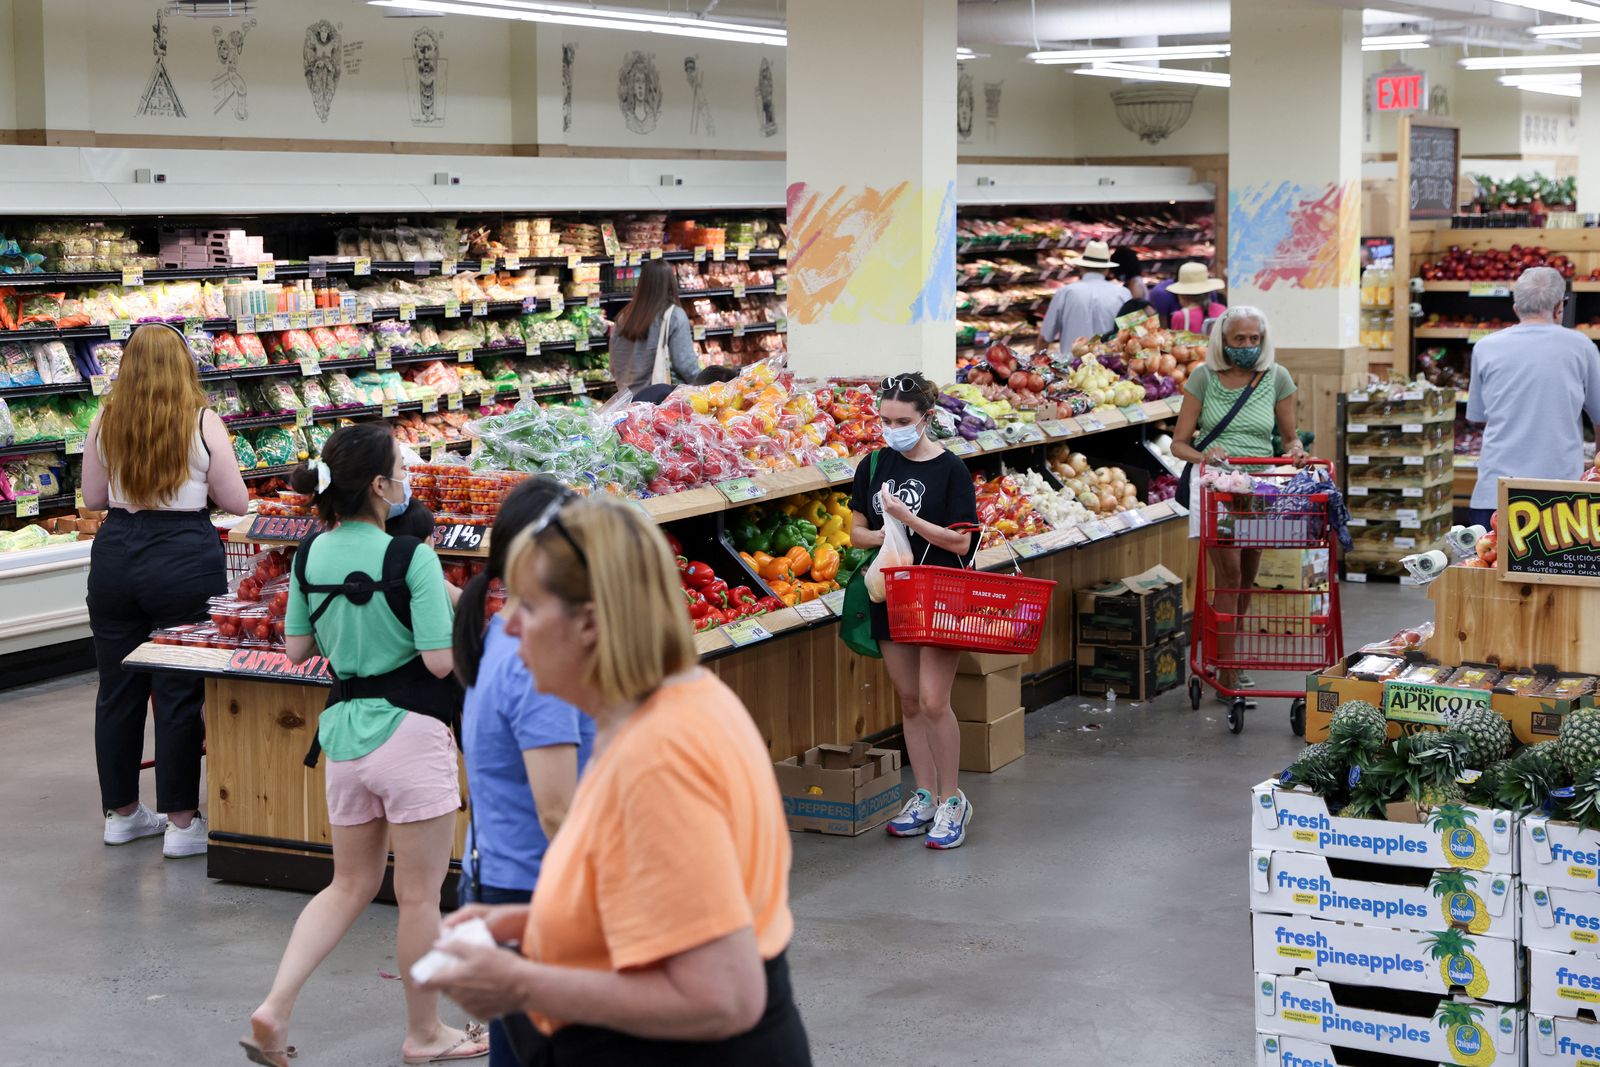 أشخاص يتسوقون في سوبر ماركت مع تأثير التضخم على الأسعار في مانهاتن بمدينة نيويورك، 10 يونيو 2022 - REUTERS